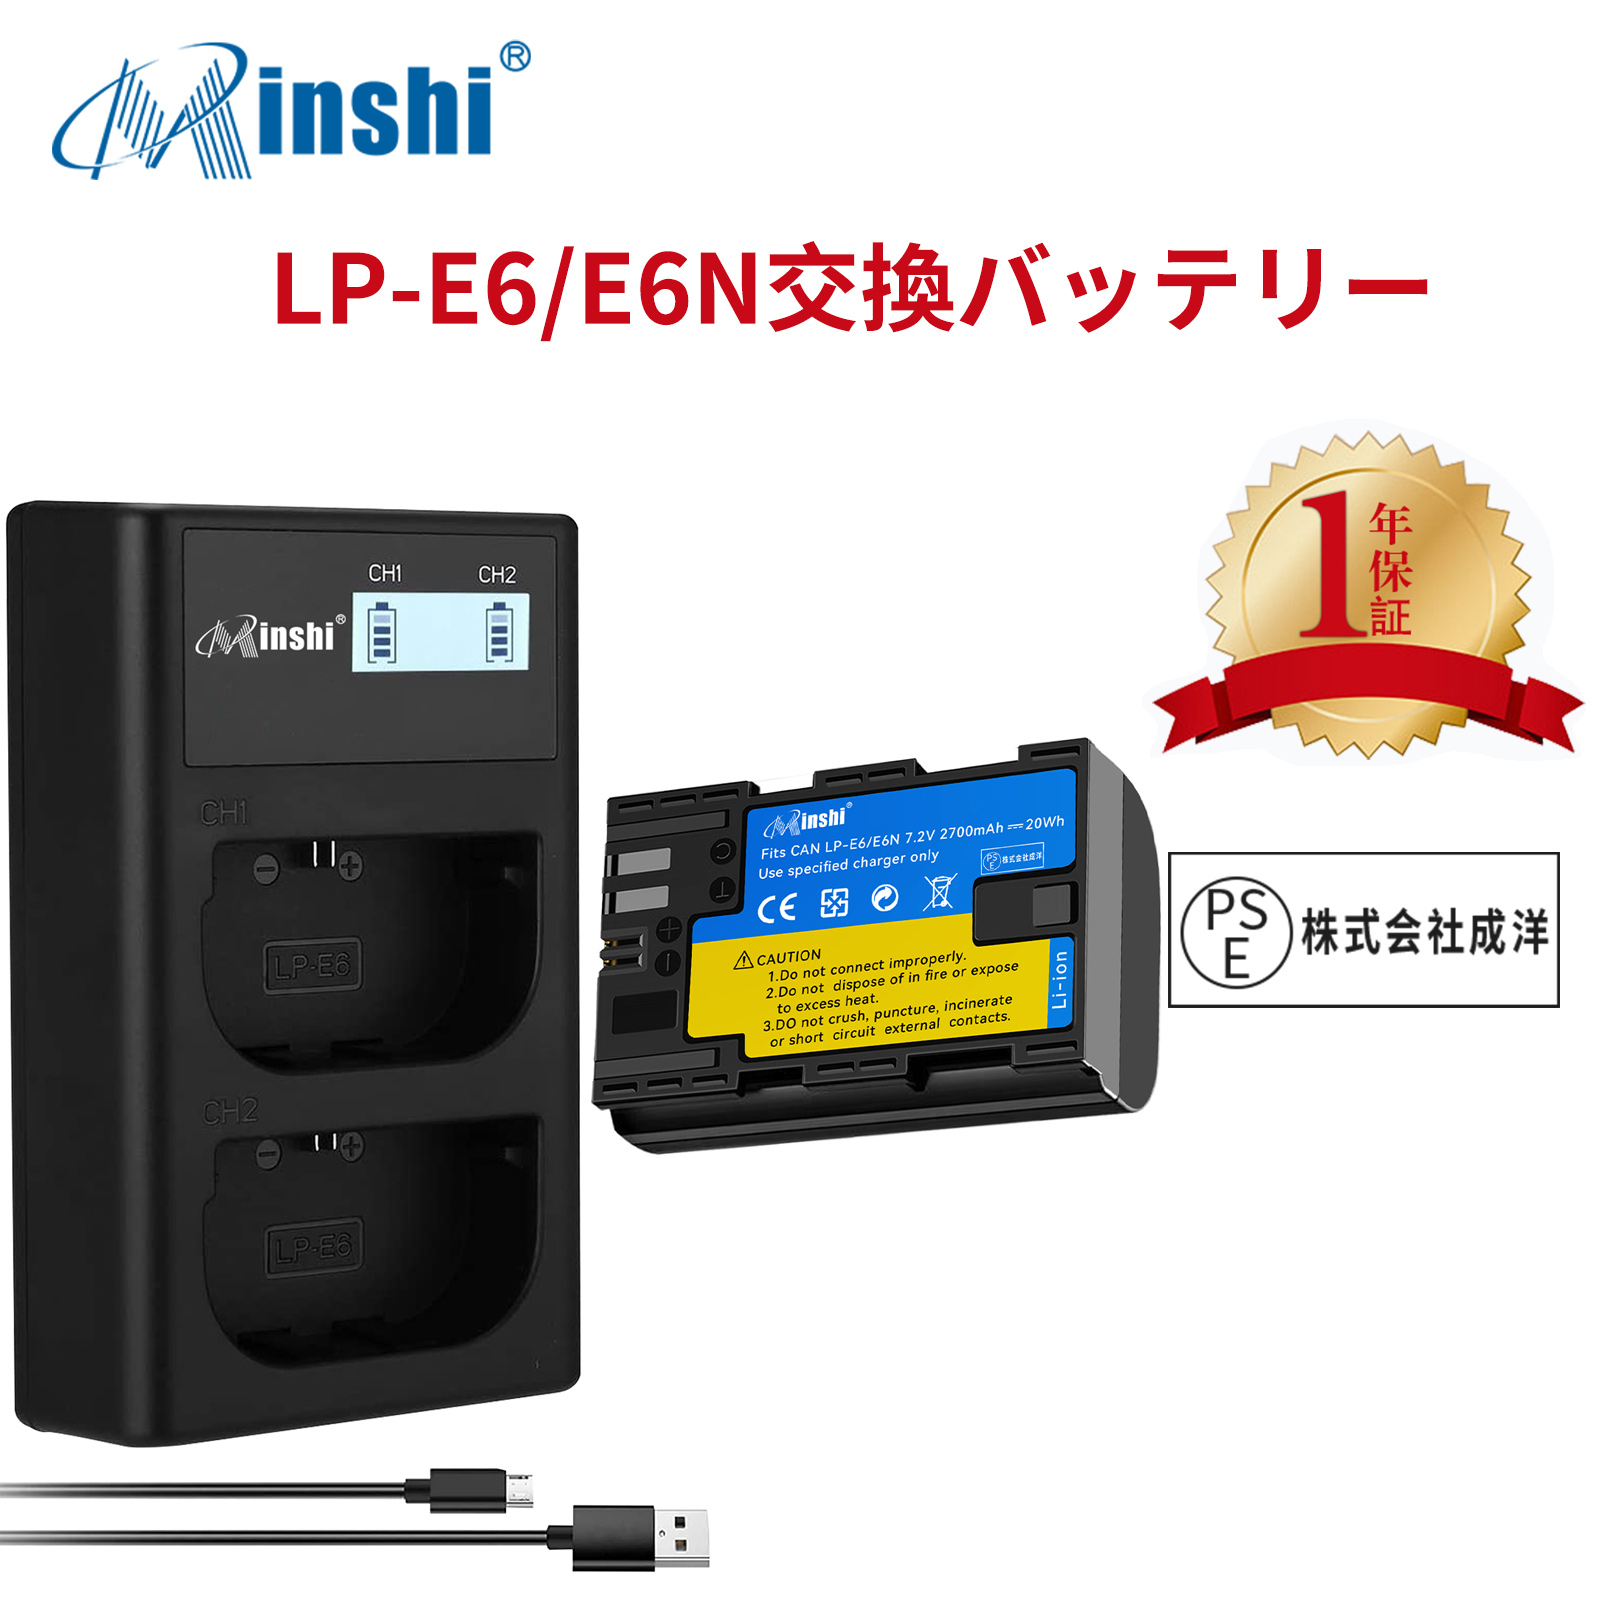 【1年保証】minshi Canon  EOS 60D【2700mAh】【互換急速USBチャージャー】高品質 LP-E6NH 交換用バッテリー